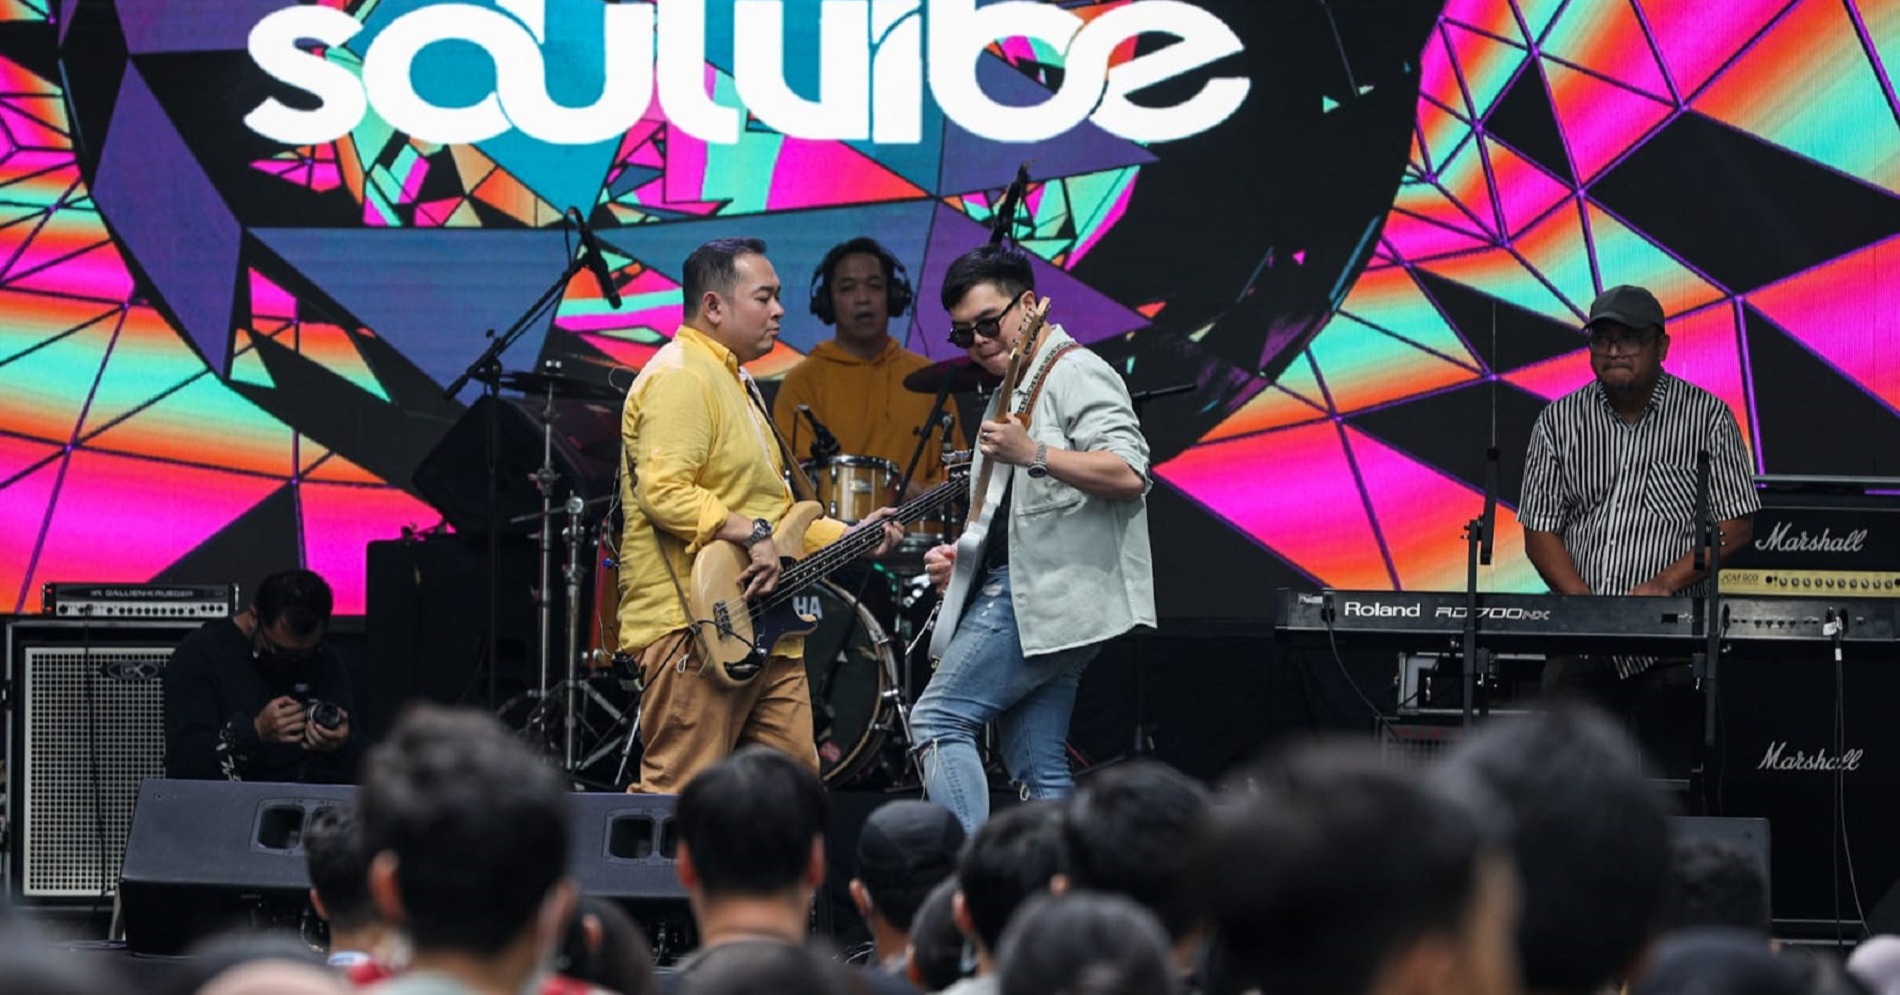 Grup musik Soulvibe tampil menghibur penonton saat festival musik Soundsfest 2022 di Bekasi, Jawa Barat, Sabtu (5/11/2022). (Hypeabis.id/Arief Hermawan P )